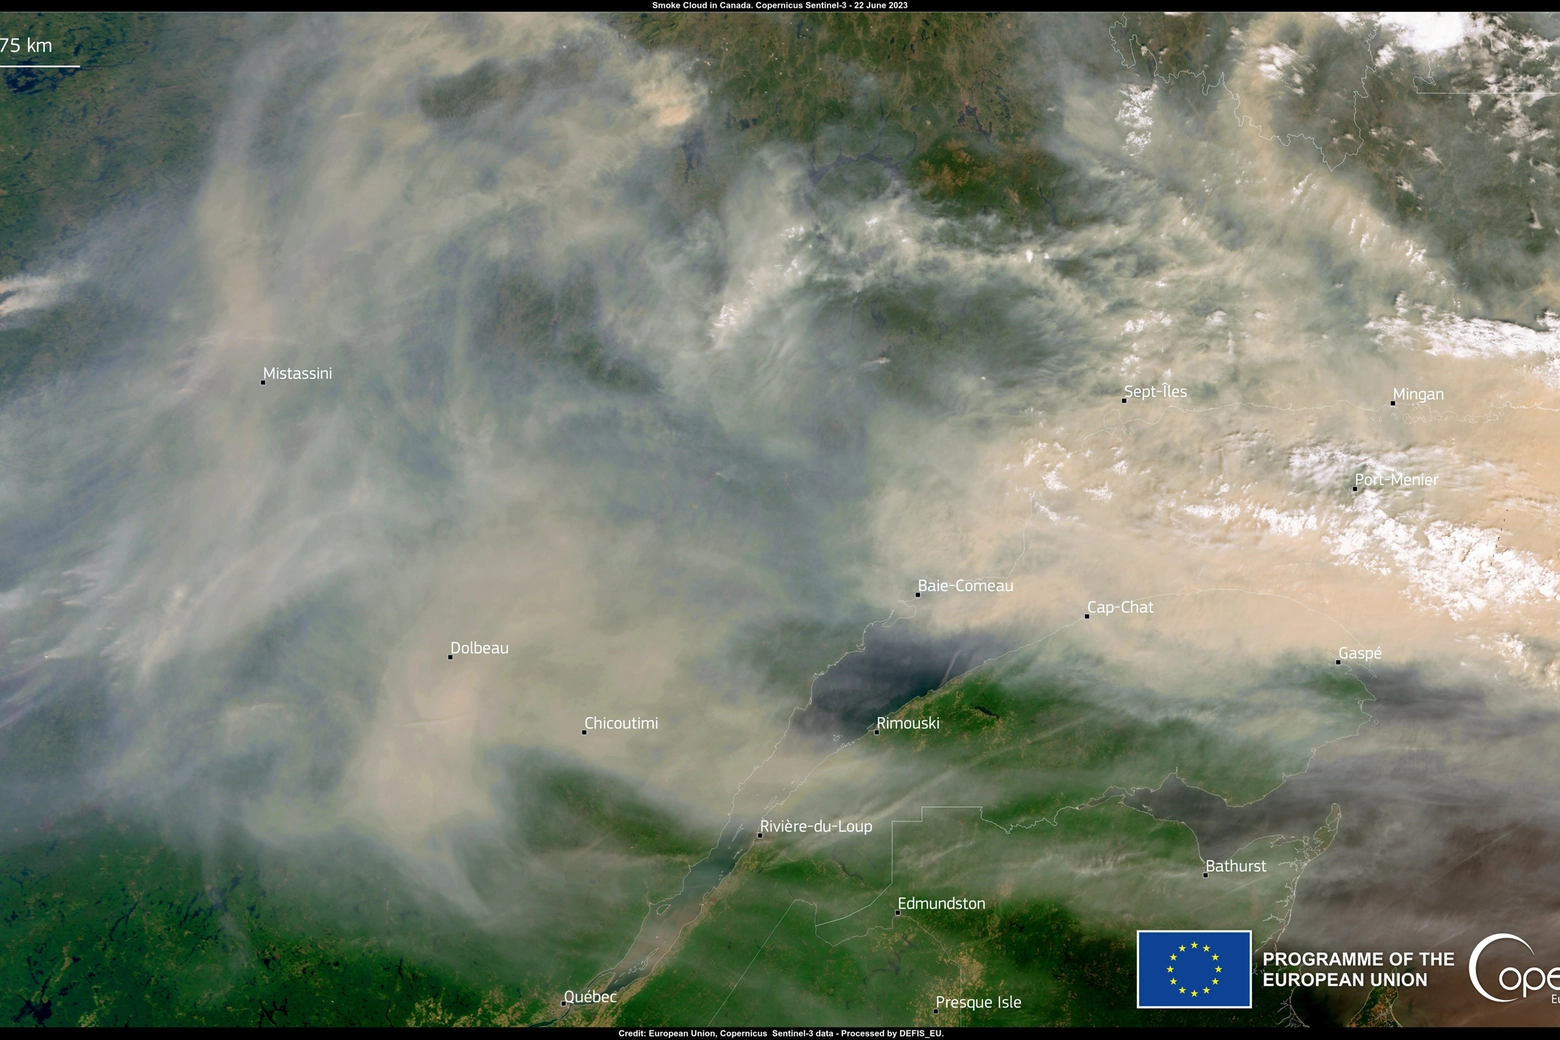 Fumo dagli incendi in Canada: le immagini satellitari